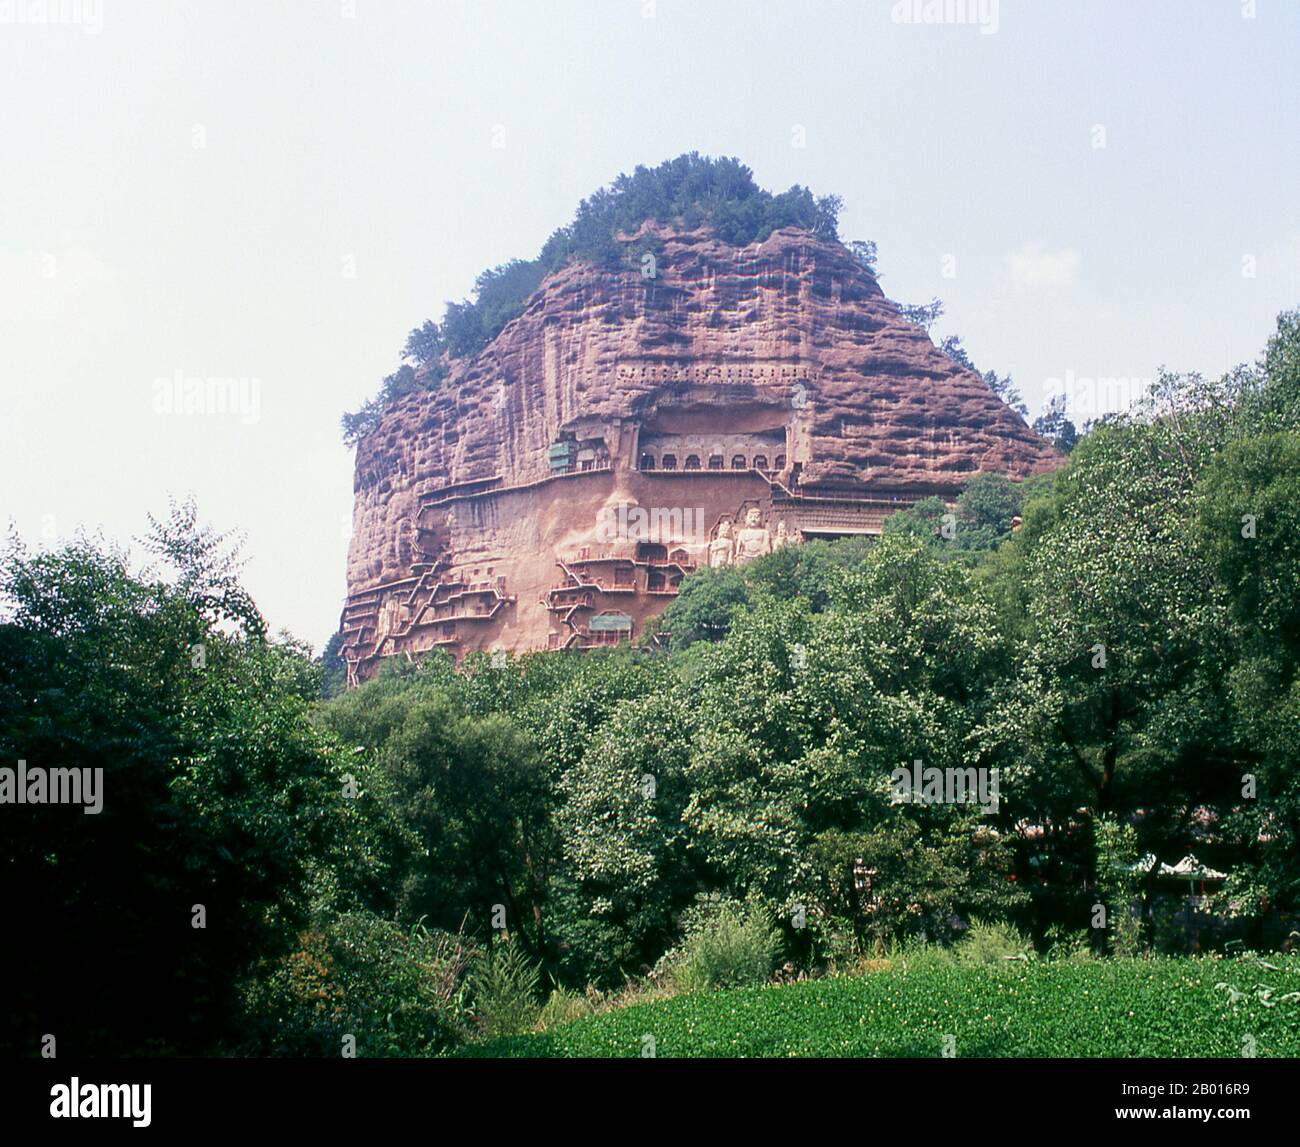 Chine : grottes de Maiji Shan, Tianshui, province de Gansu.Maijishan Shiku (grottes de Maiji Shan) est l’un des quatre groupes de temples bouddhistes les plus importants de Chine (les autres étant Datong, Luoyang et les grottes de Mogao à Dunhuang).À partir des dynasties de Wei du Nord (386-535) et de Zhou du Nord (557-81), les bouddhistes tachent des grottes sur les côtés d'un affleurement rouge qui s'élève des collines couvertes de feuillage environnantes.Les figures du Bouddha, des bodhisattvas et des disciples ont été sculptées dans le rocher plus dur apporté d'ailleurs, et installées dans les grottes. Banque D'Images